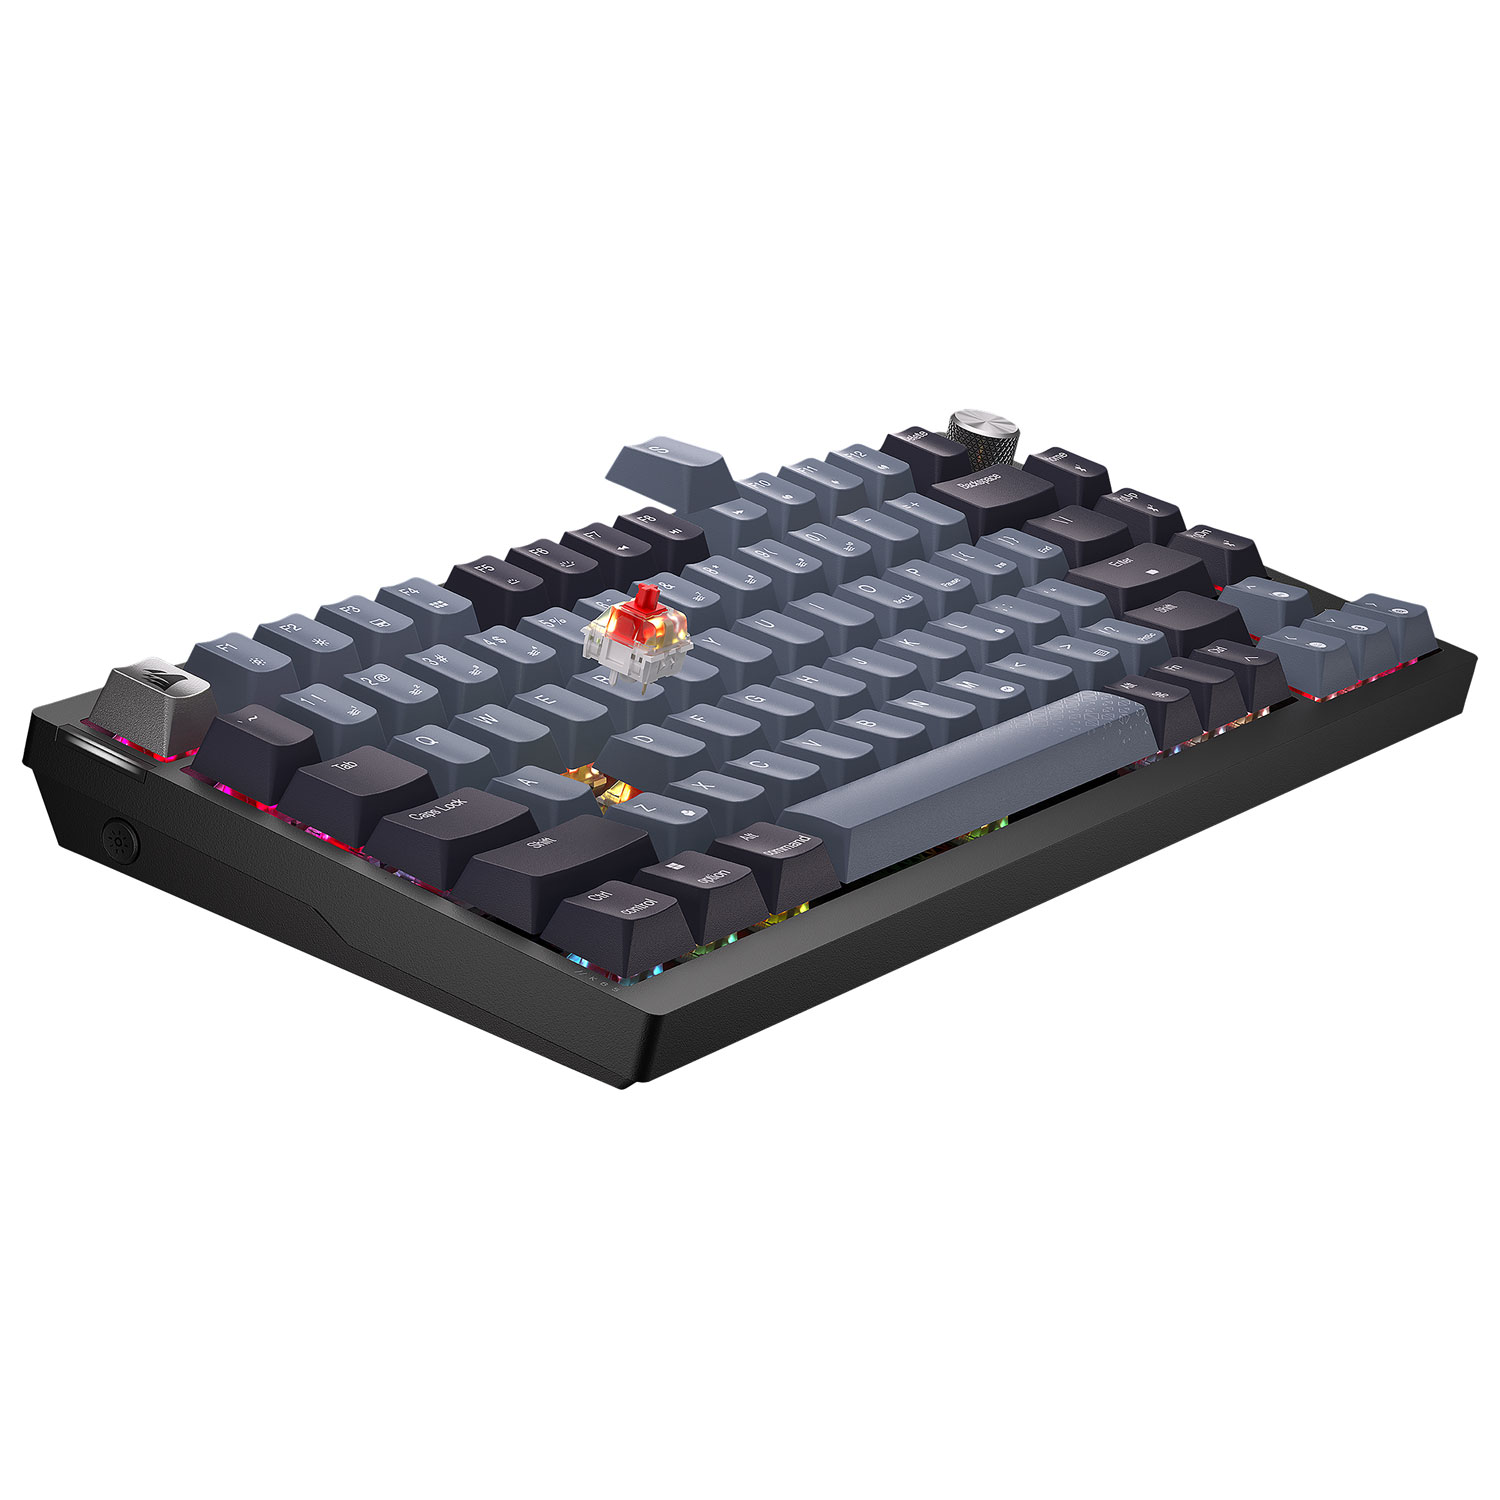 K65 PLUS WIRELESS 75% Gaming Keyboard